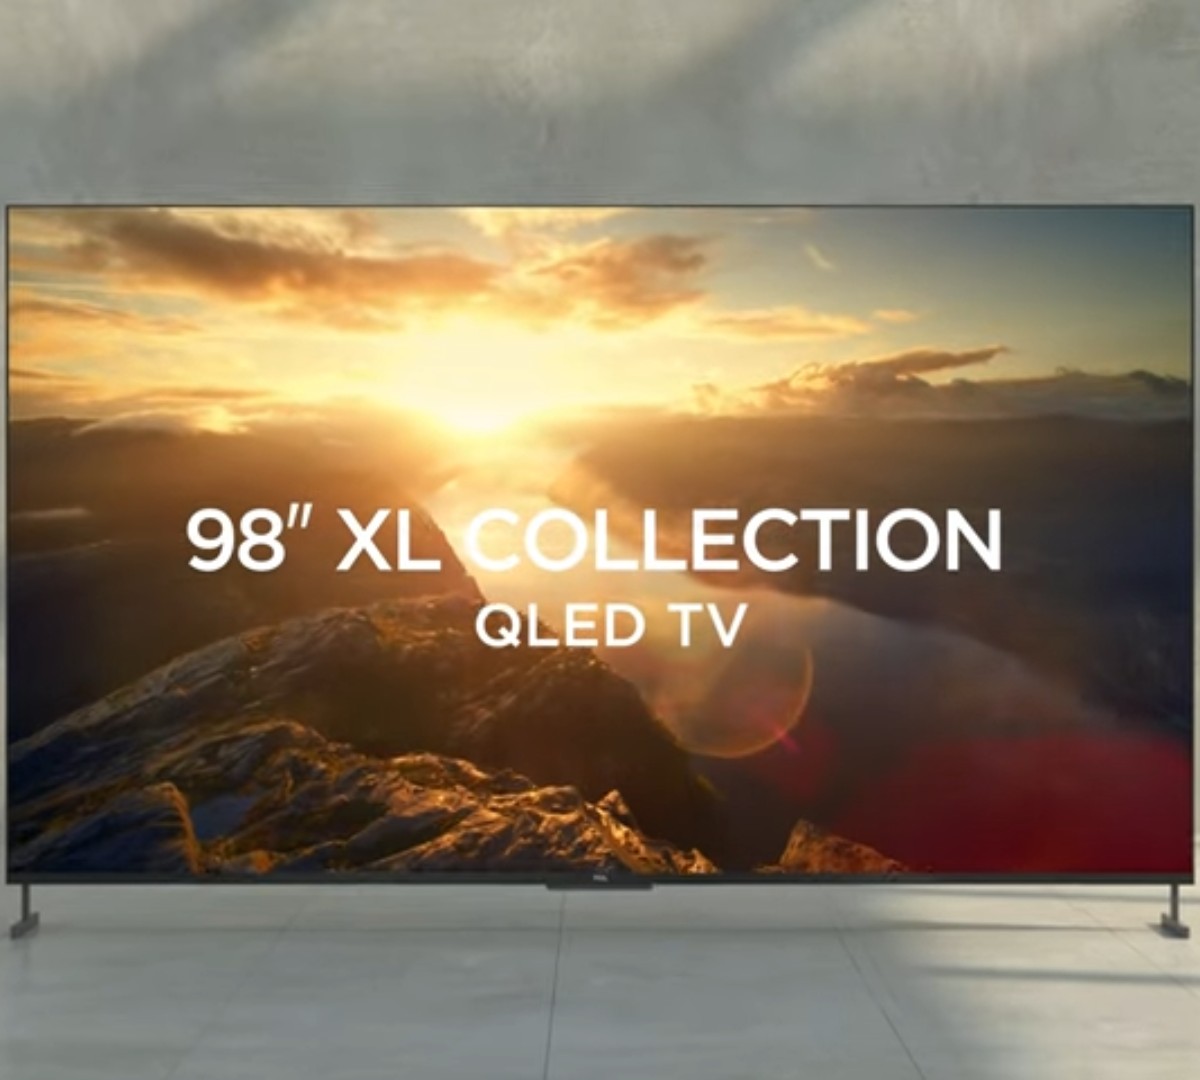 TCL P635: qual é o potencial de um televisor com Google TV?